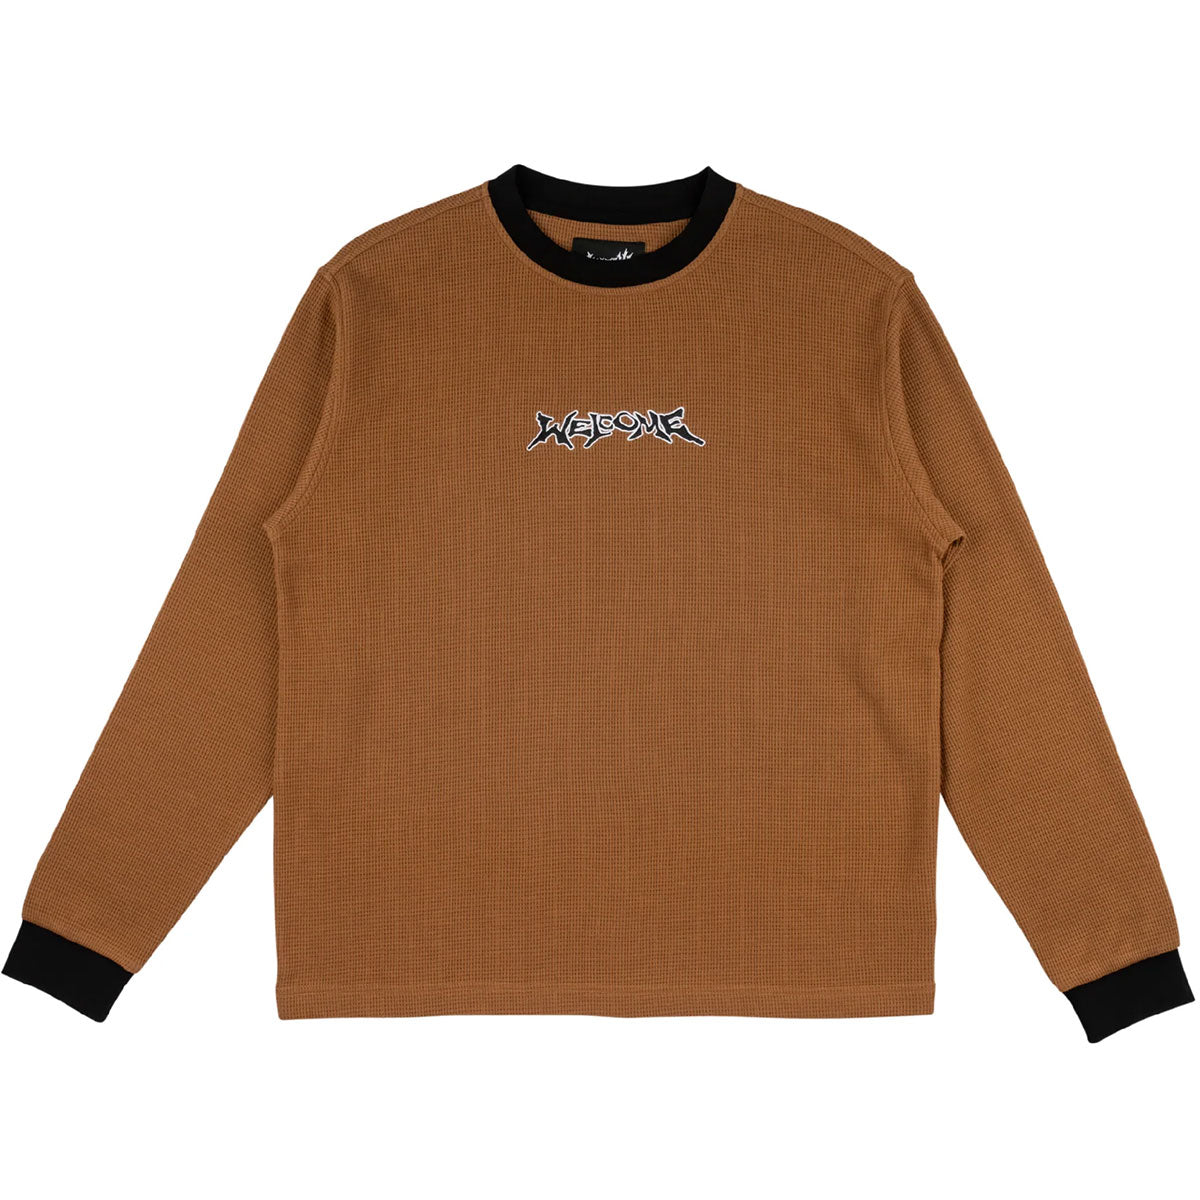 Welcome Breakdown Long Sleeve Thermal Shirt - Brown image 1